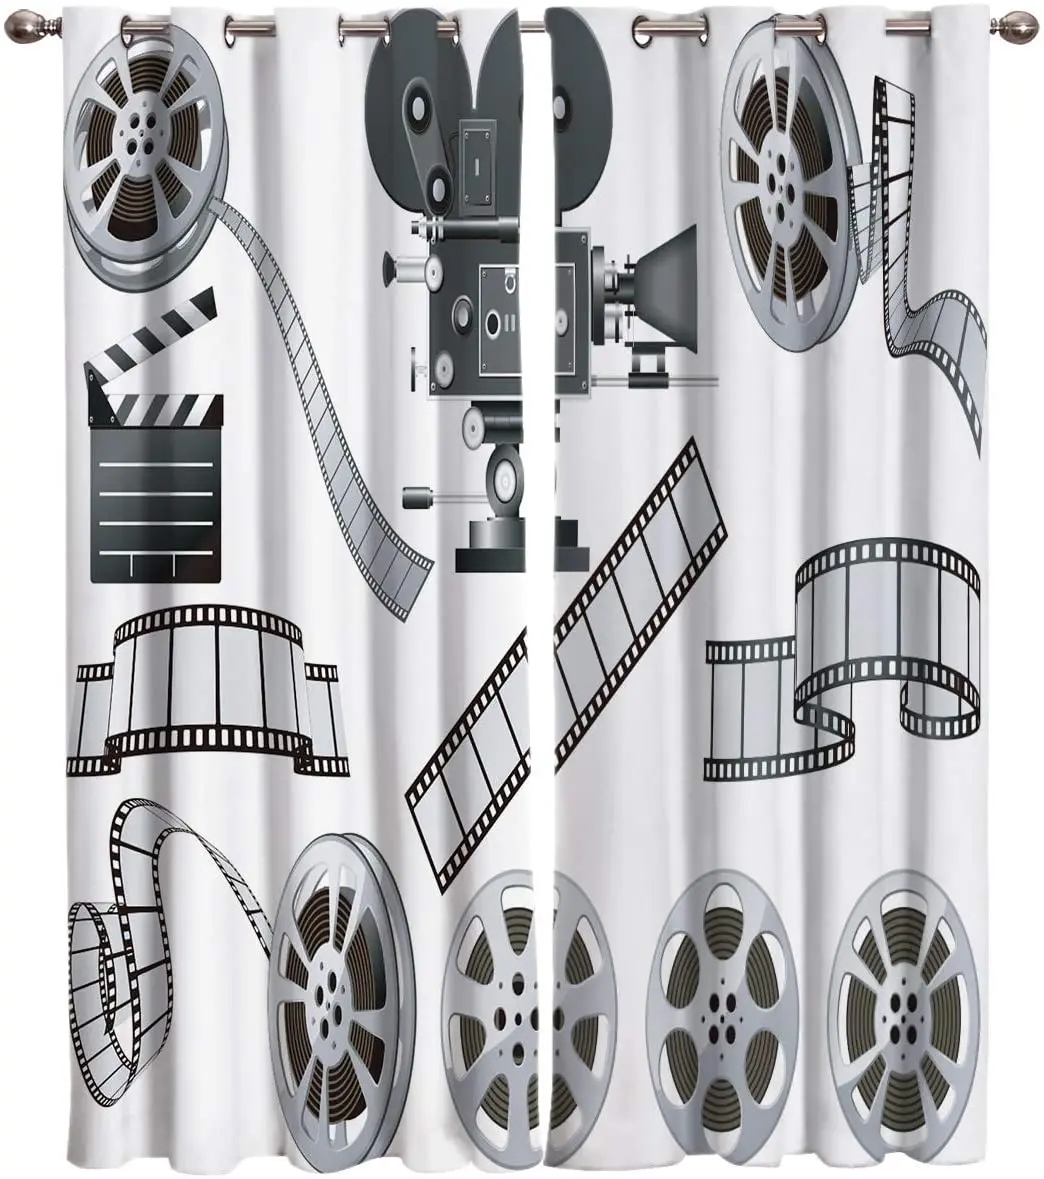 

Декоративные затемняющие шторы для гостиной, занавески для проекции фильмов в виде двух спален, с изображением кино, в масштабе серого